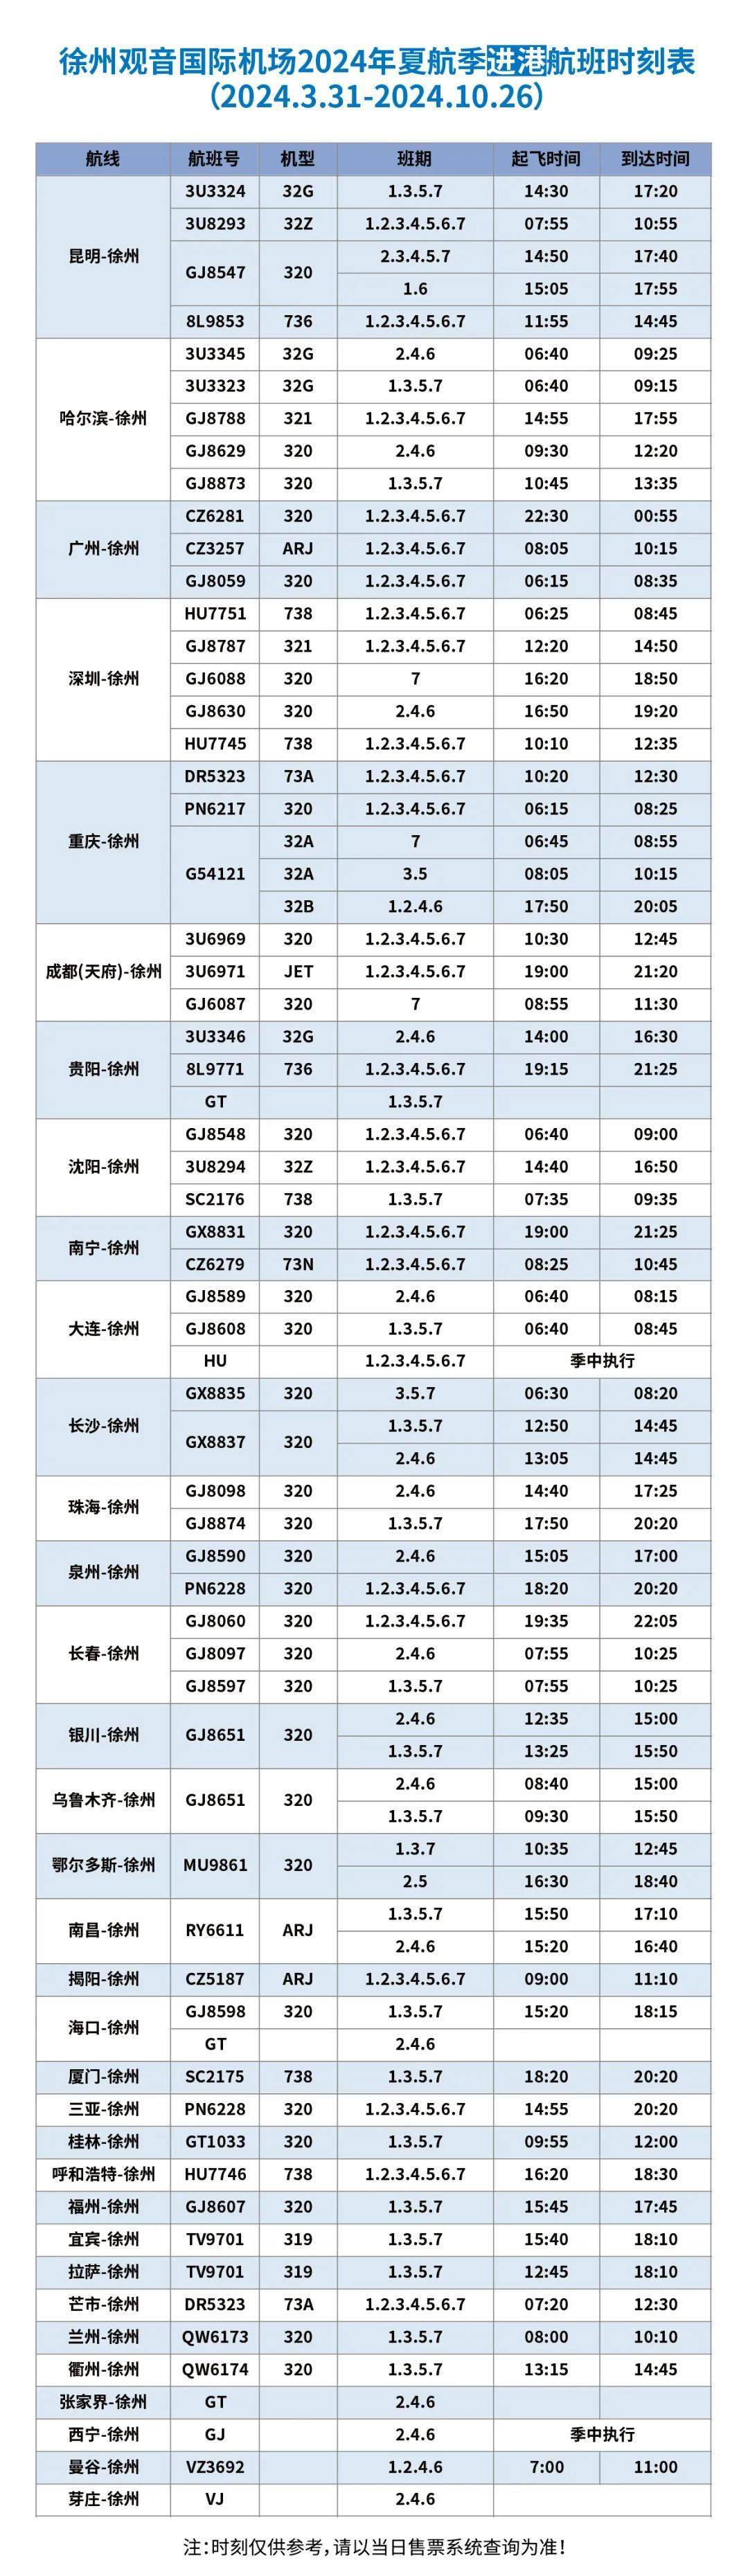 徐州机场2024年夏航季航班时刻表来啦!